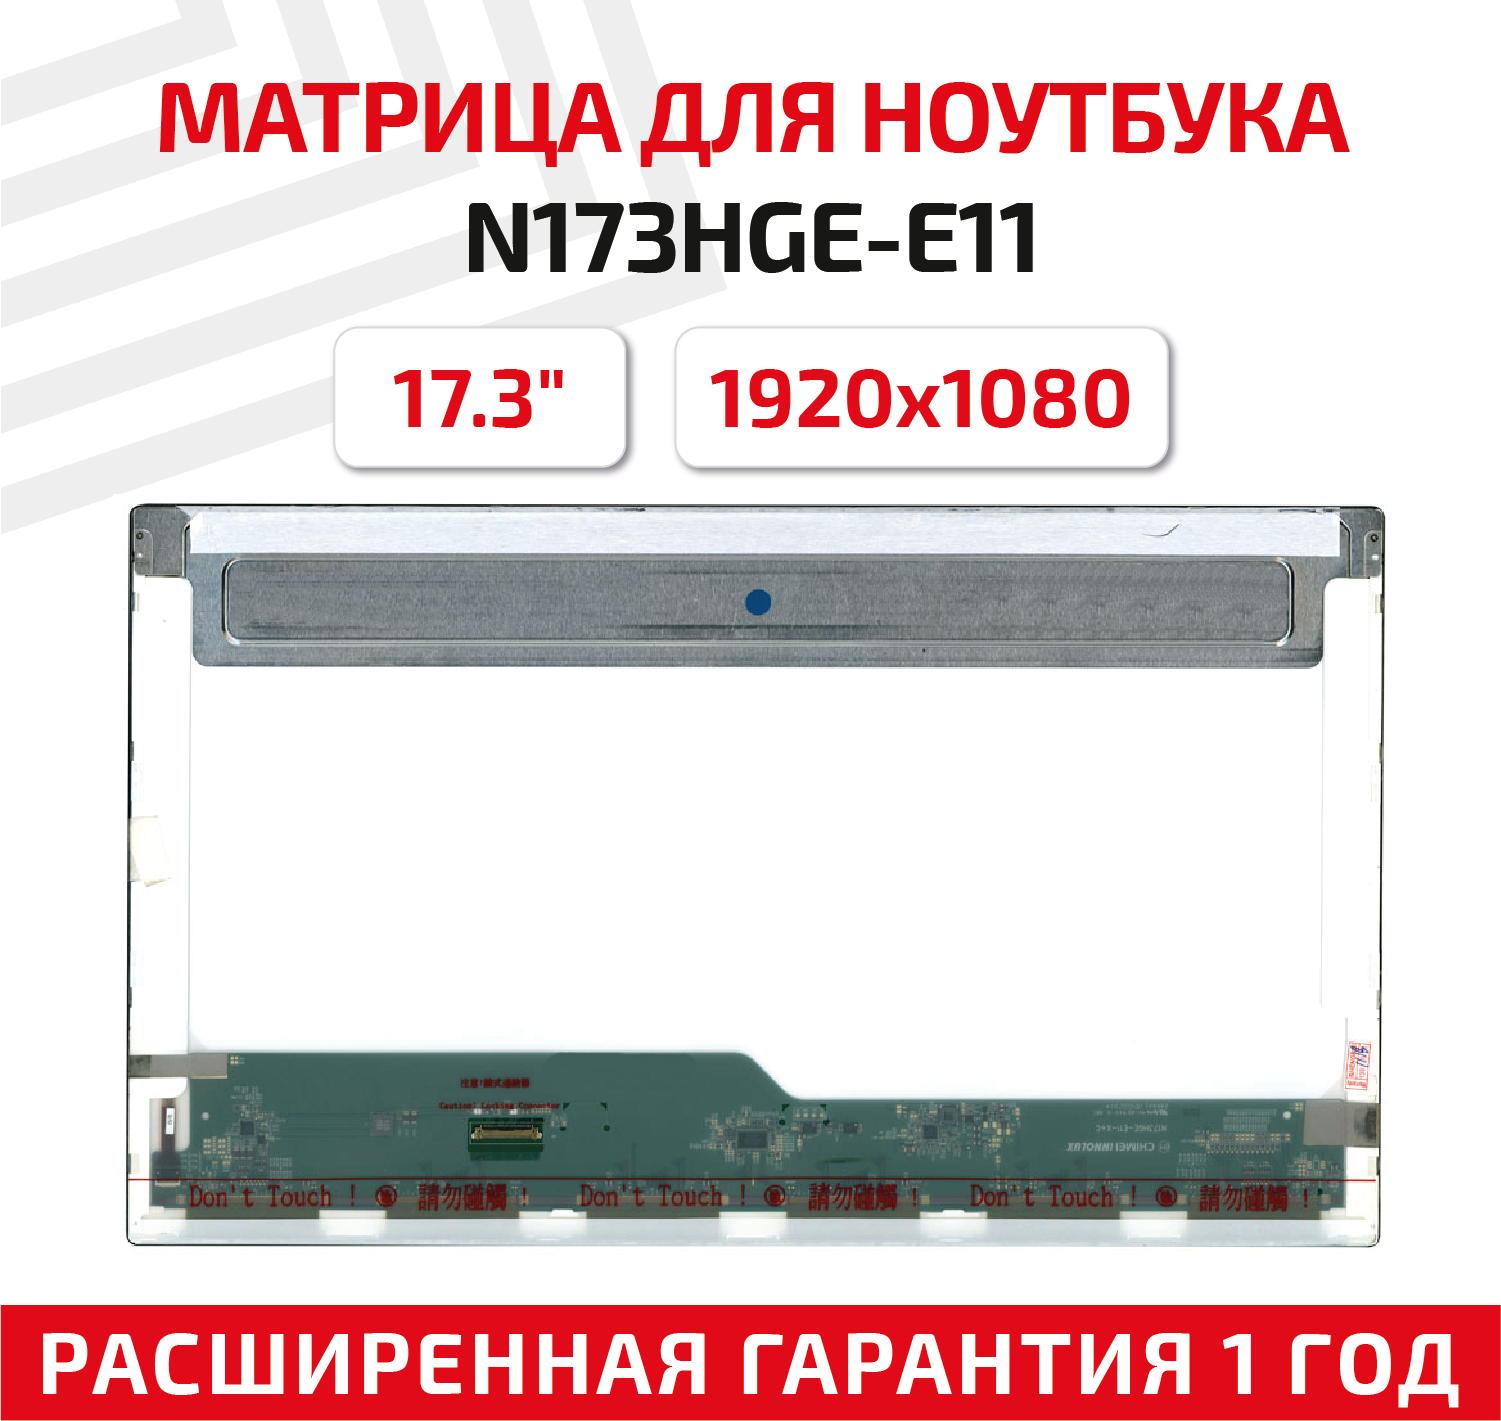 Матрица (экран) для ноутбука N173HGE-E11 17.3" 1920x1080 30pin Normal (стандарт) светодиодная (LED) матовая